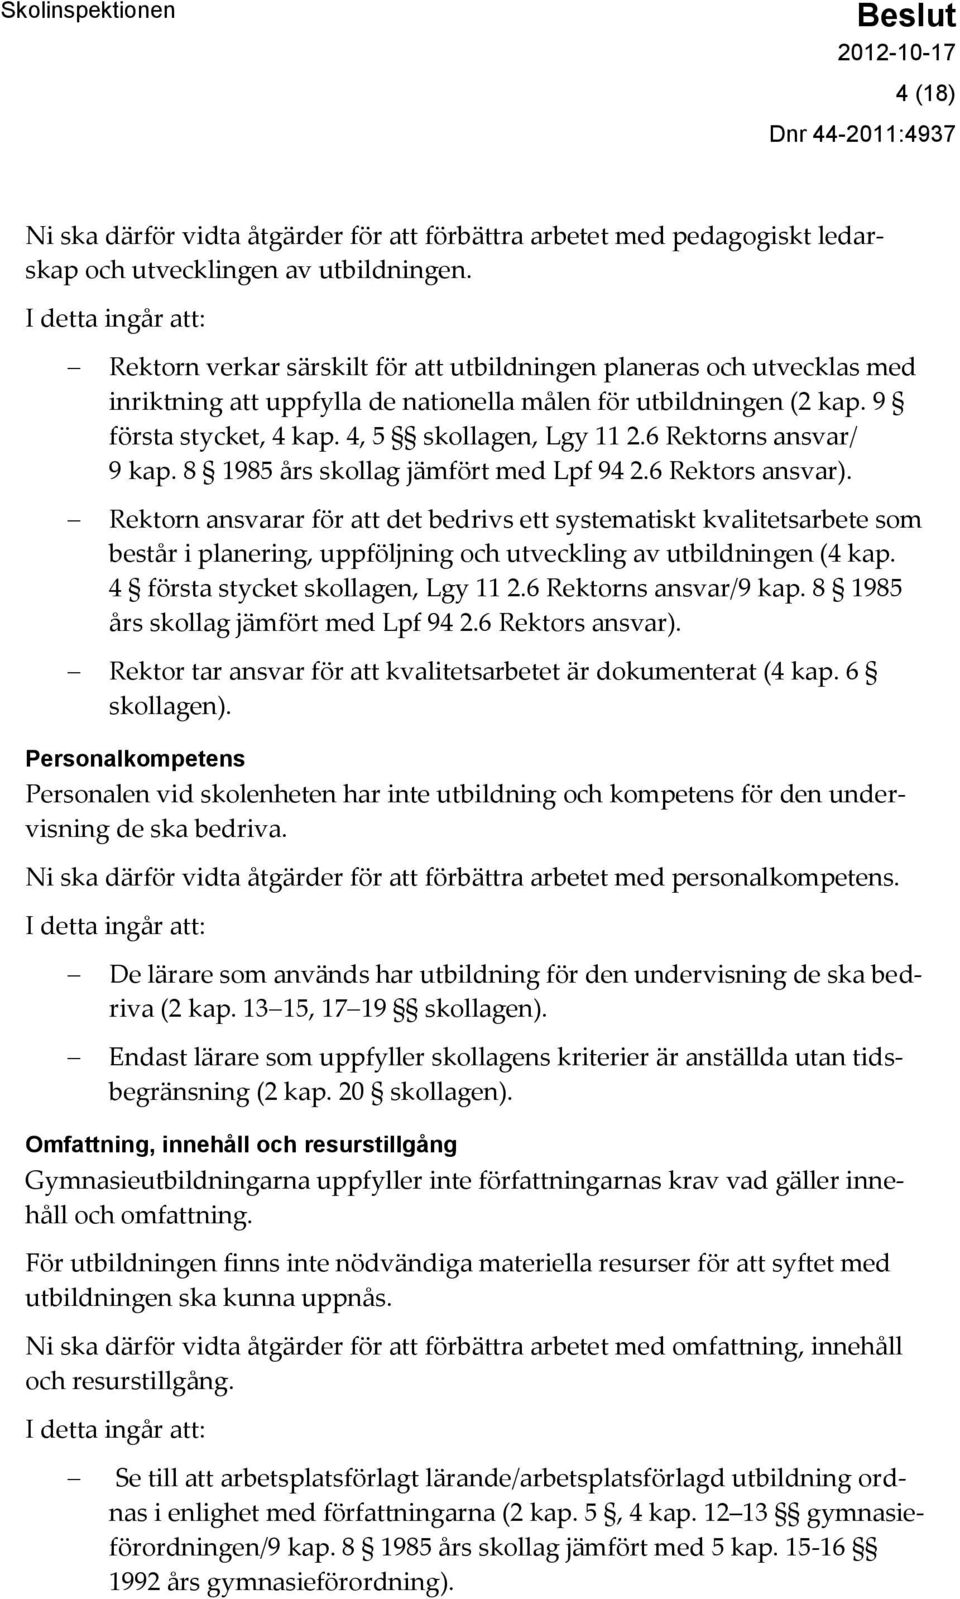 4, 5 skollagen, Lgy 11 2.6 Rektorns ansvar/ 9 kap. 8 1985 års skollag jämfört med Lpf 94 2.6 Rektors ansvar).